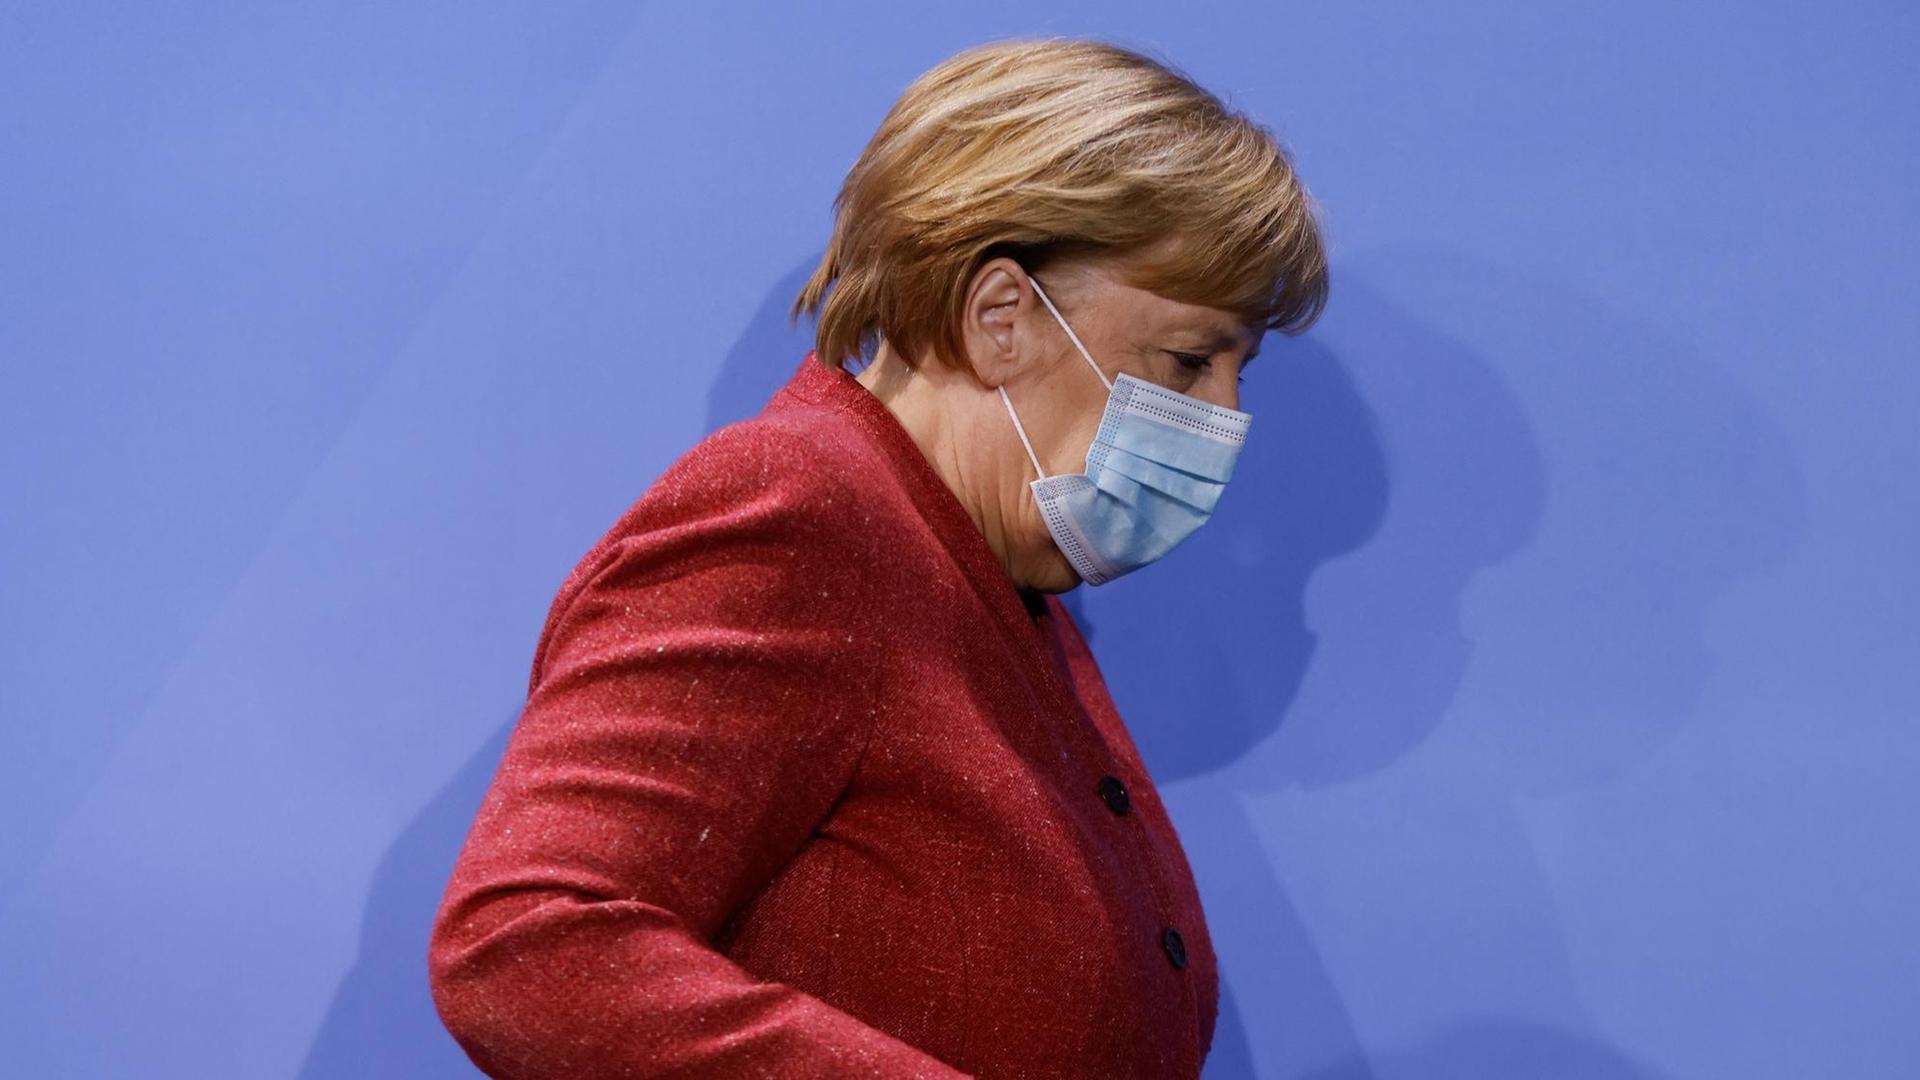 Bundeskanzlerin Angela Merkel (CDU) verlässt nach einer Pressekonferenz einen Saal im Bundeskanzleramt. Sie trägt einen roten Blazer und einen Mund-Nase-Schutz.